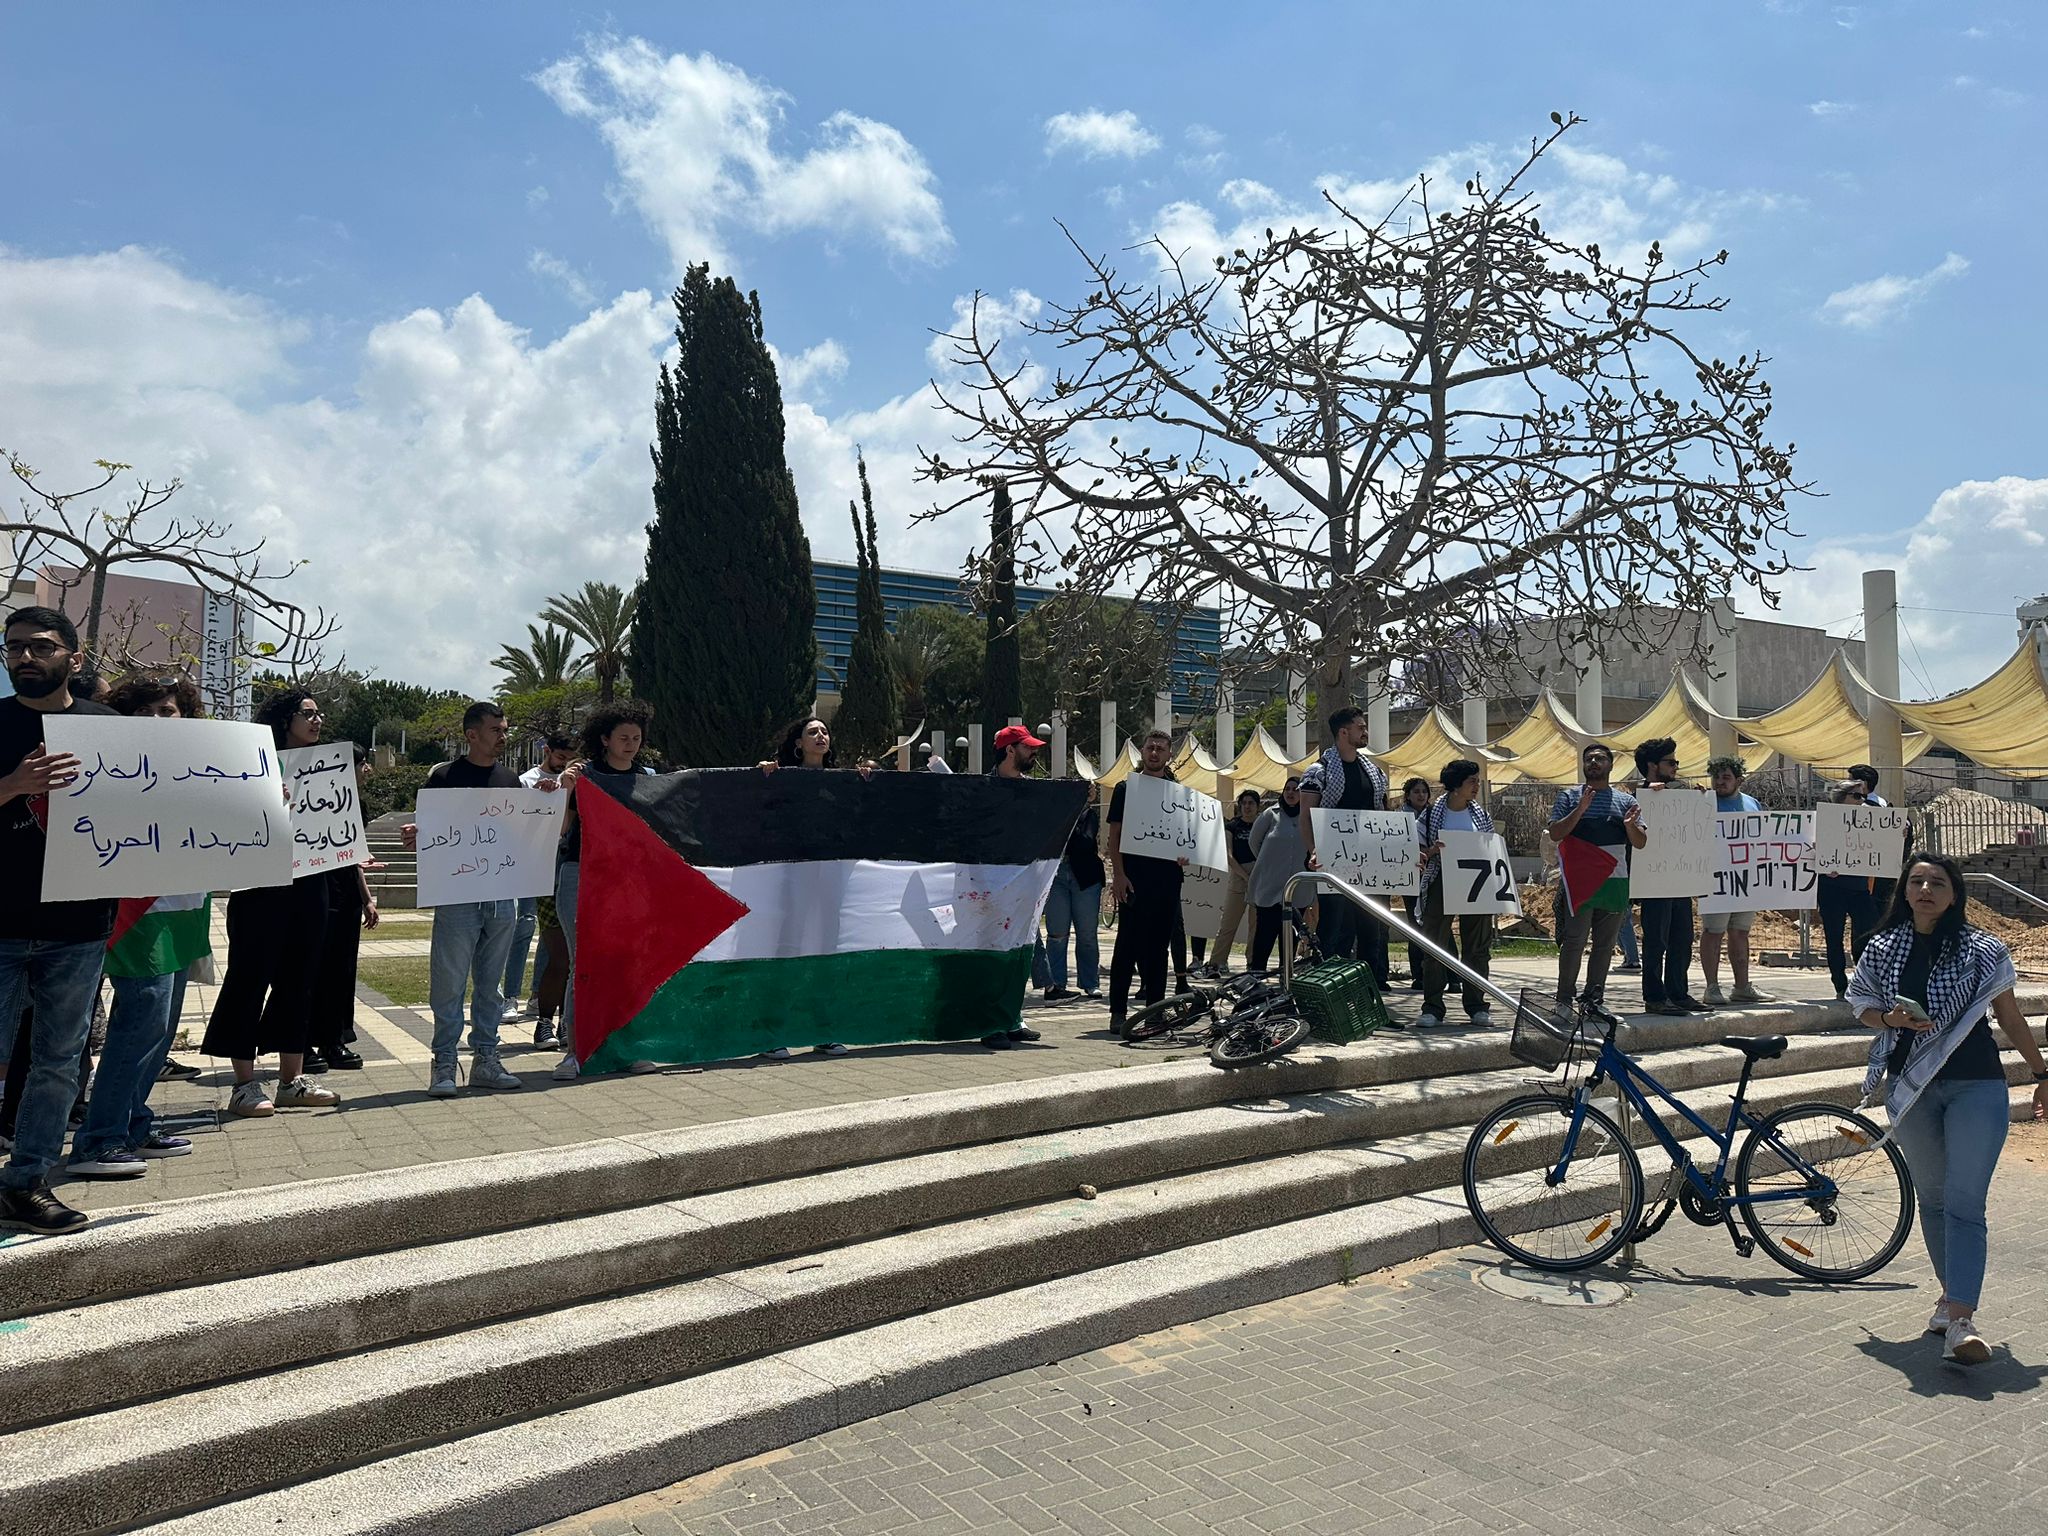  وقفة احتجاجية في جامعة تل أبيب ضد الجريمة وتواطؤ الشرطة